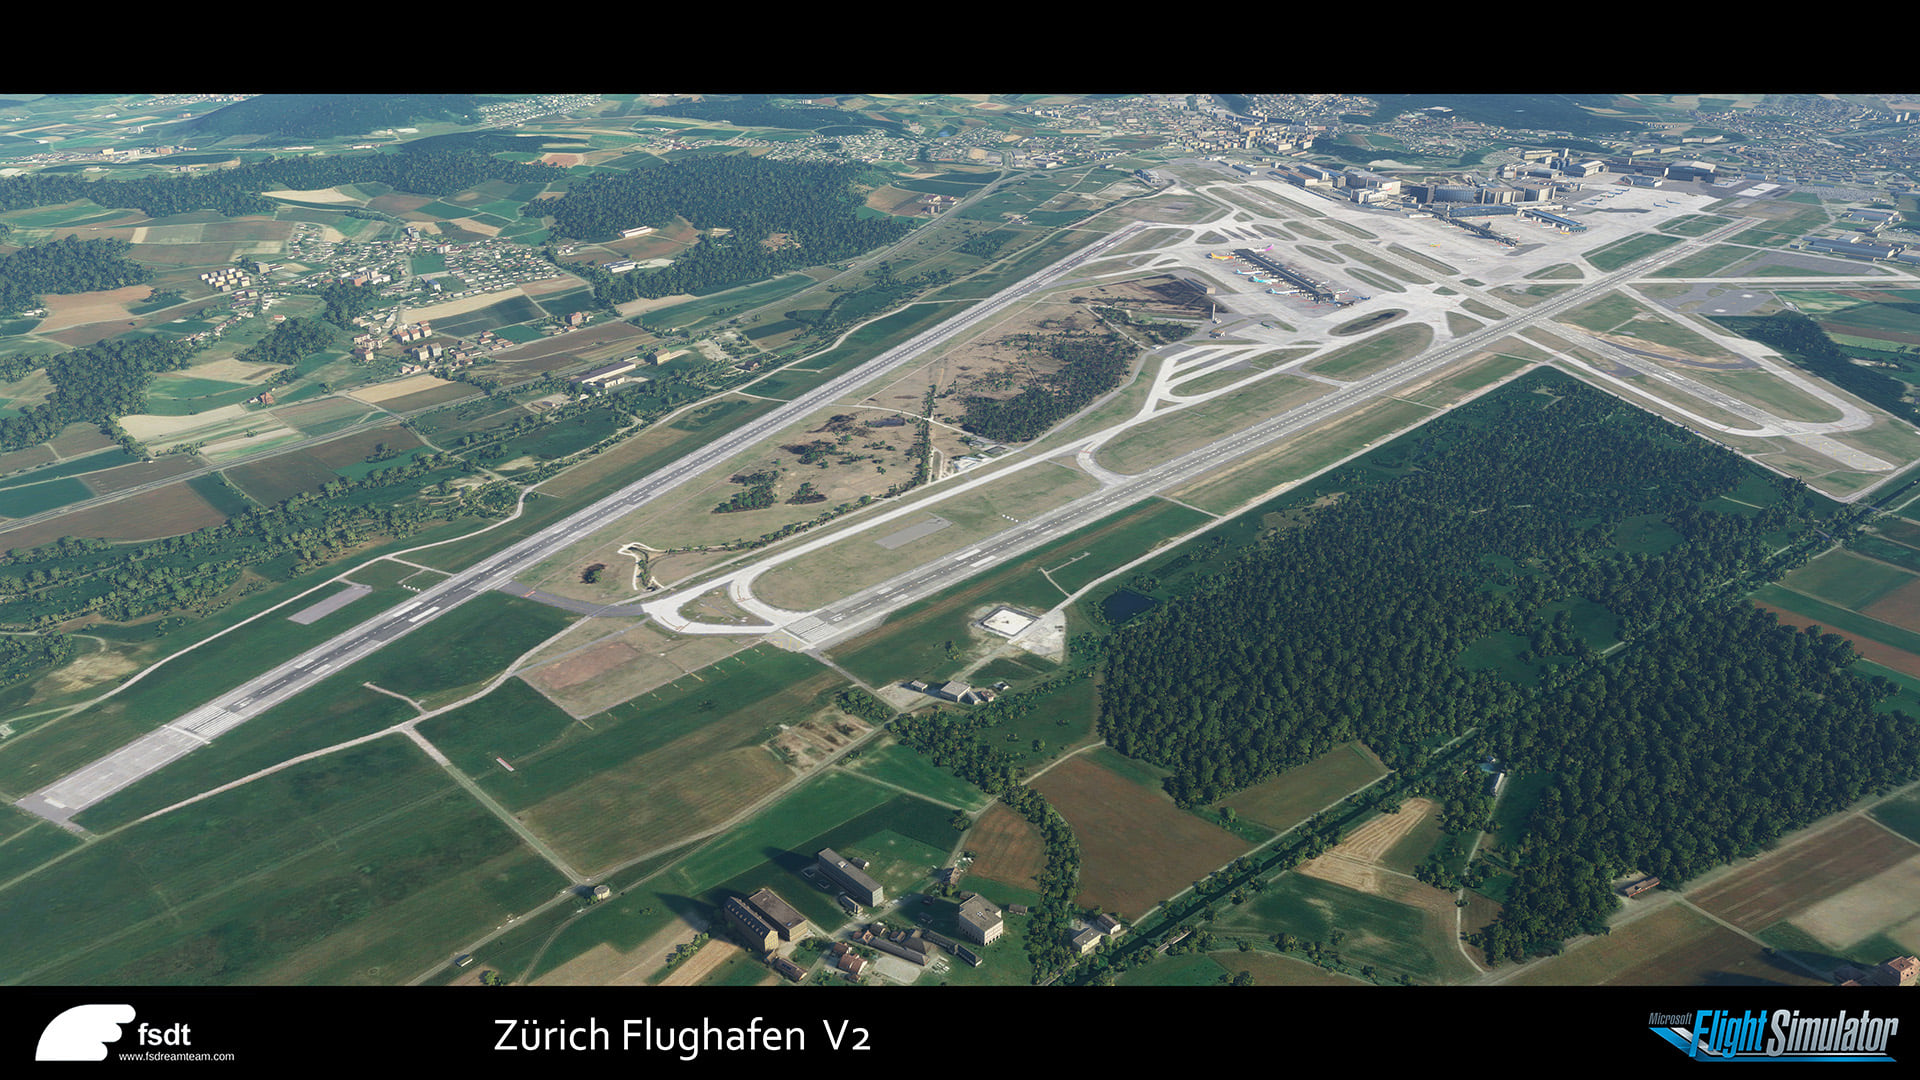 Zurich airport msfs 2